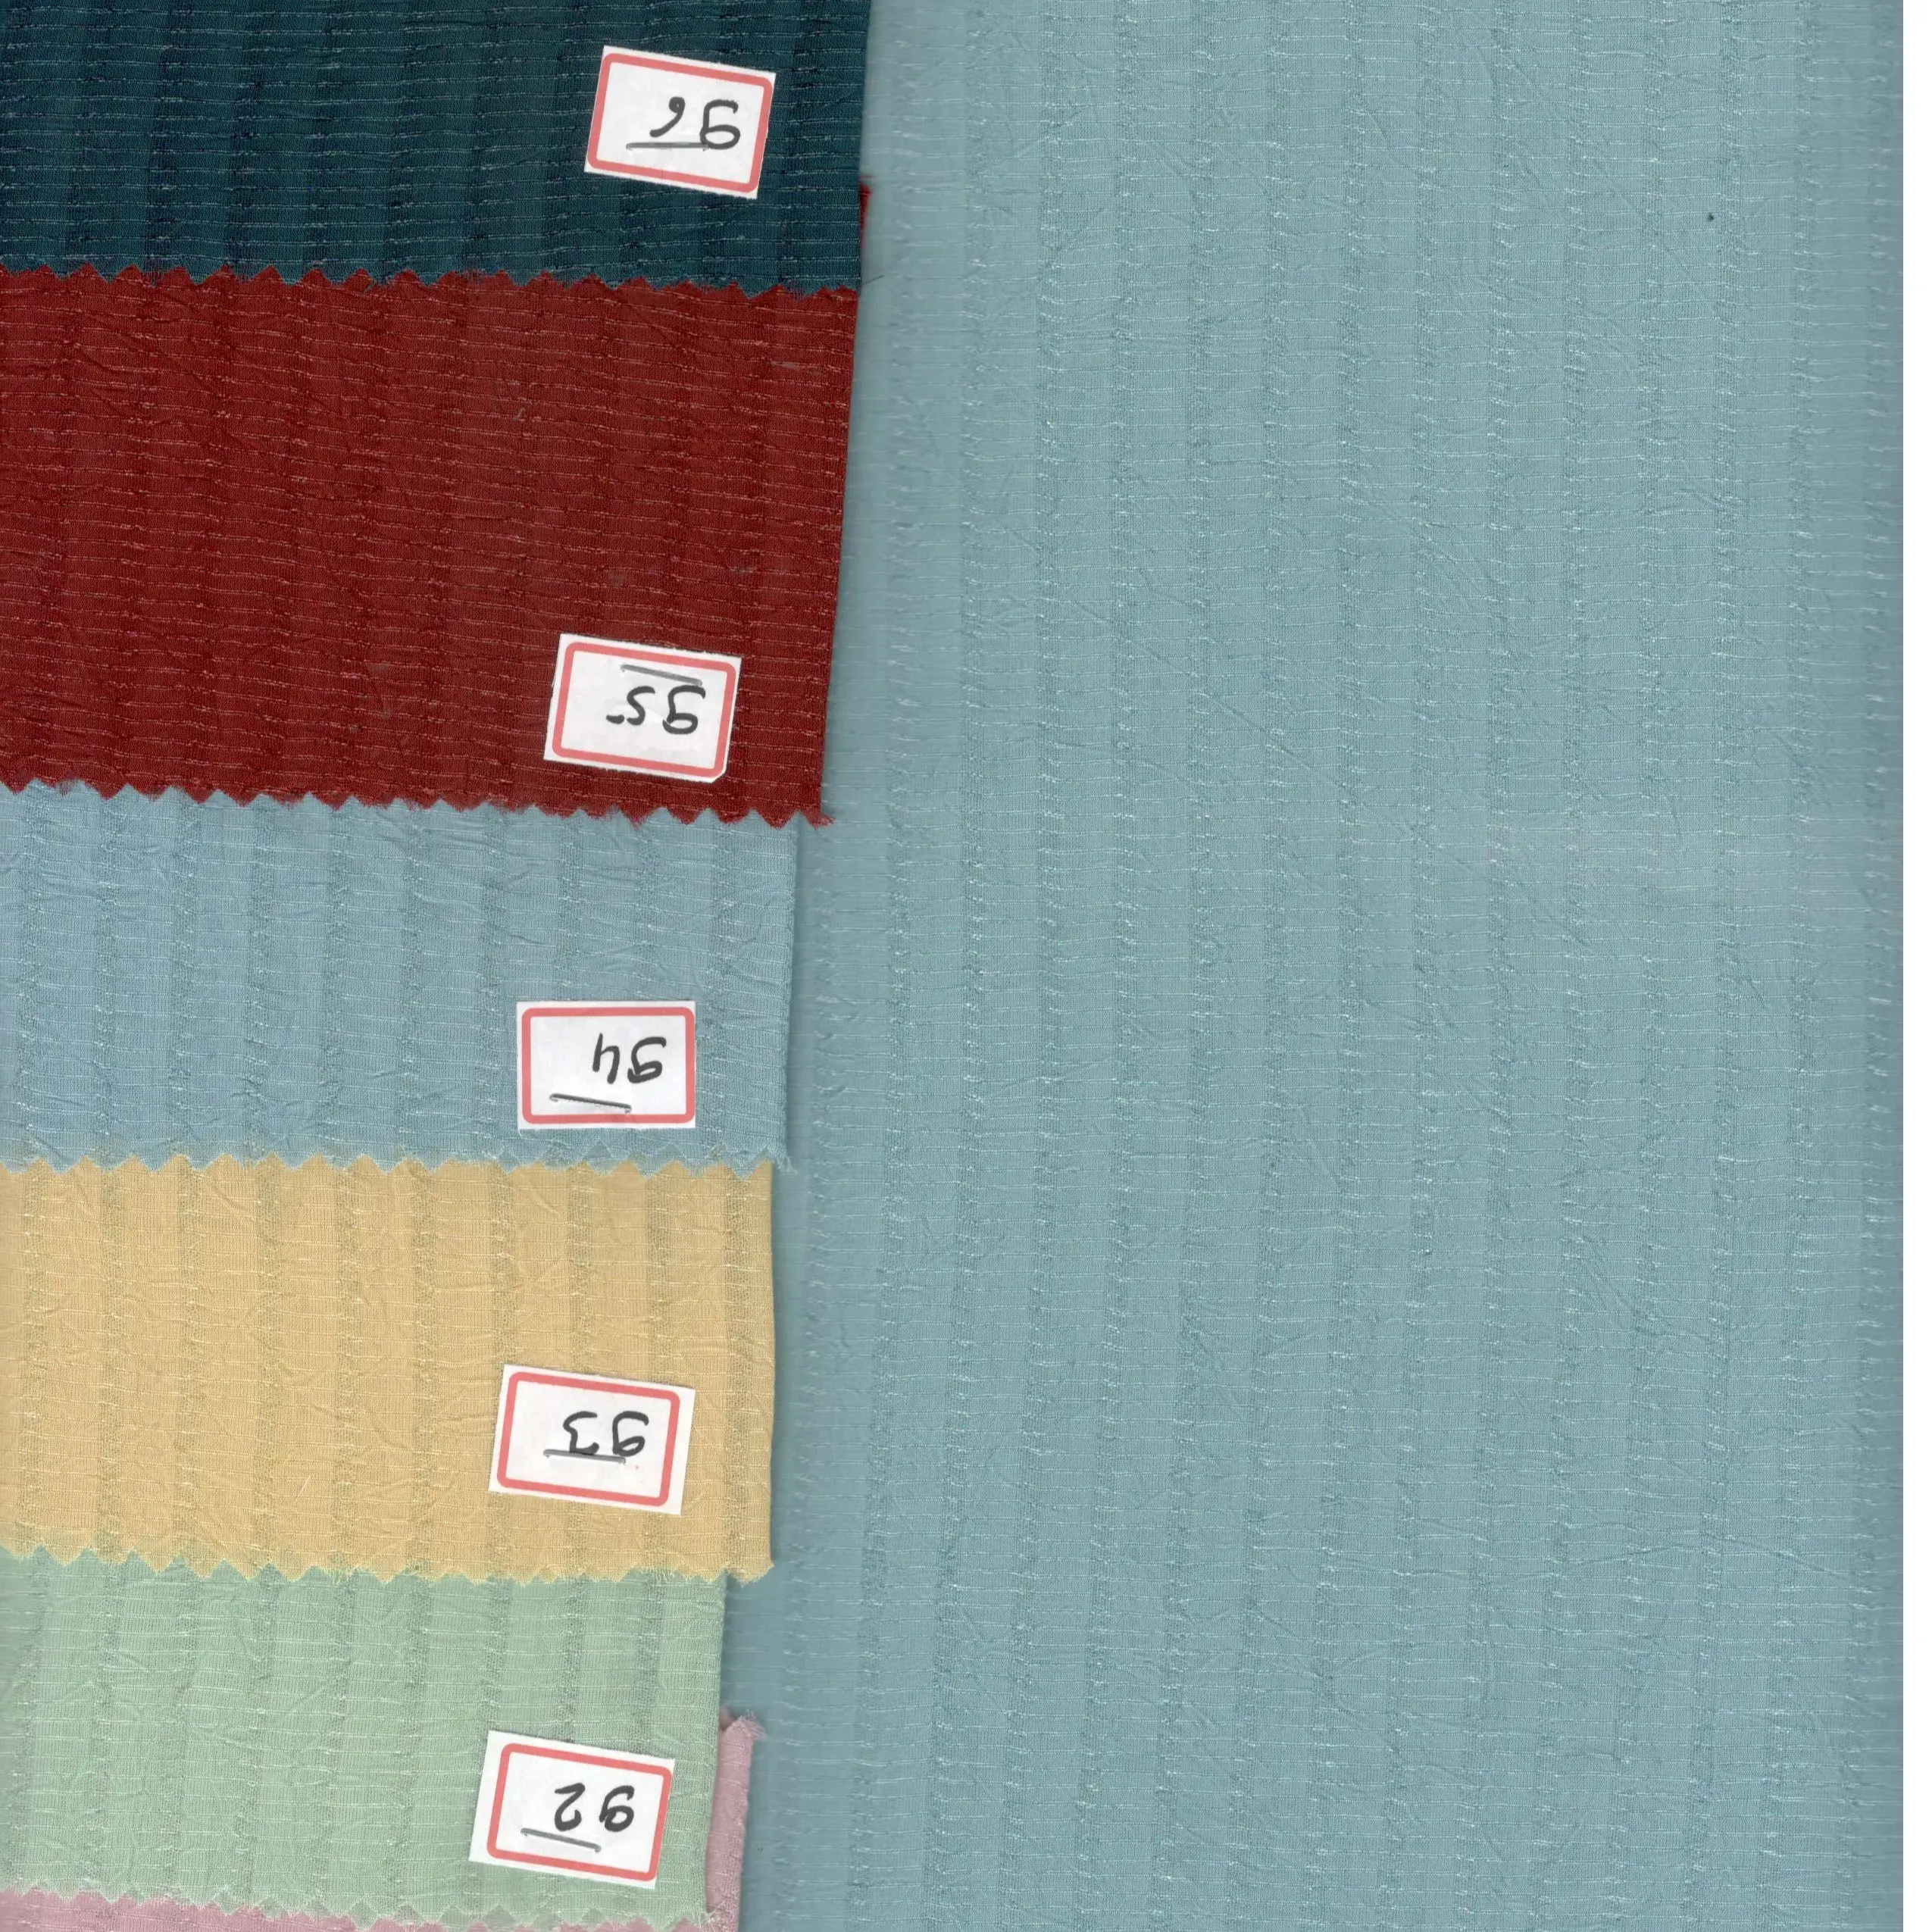 Giyim dokuma POLYESTER kumaş için kumaşlar şeker ezmek genişliği 56 "sınıf kaliteli kumaş prim giyim kullanılan